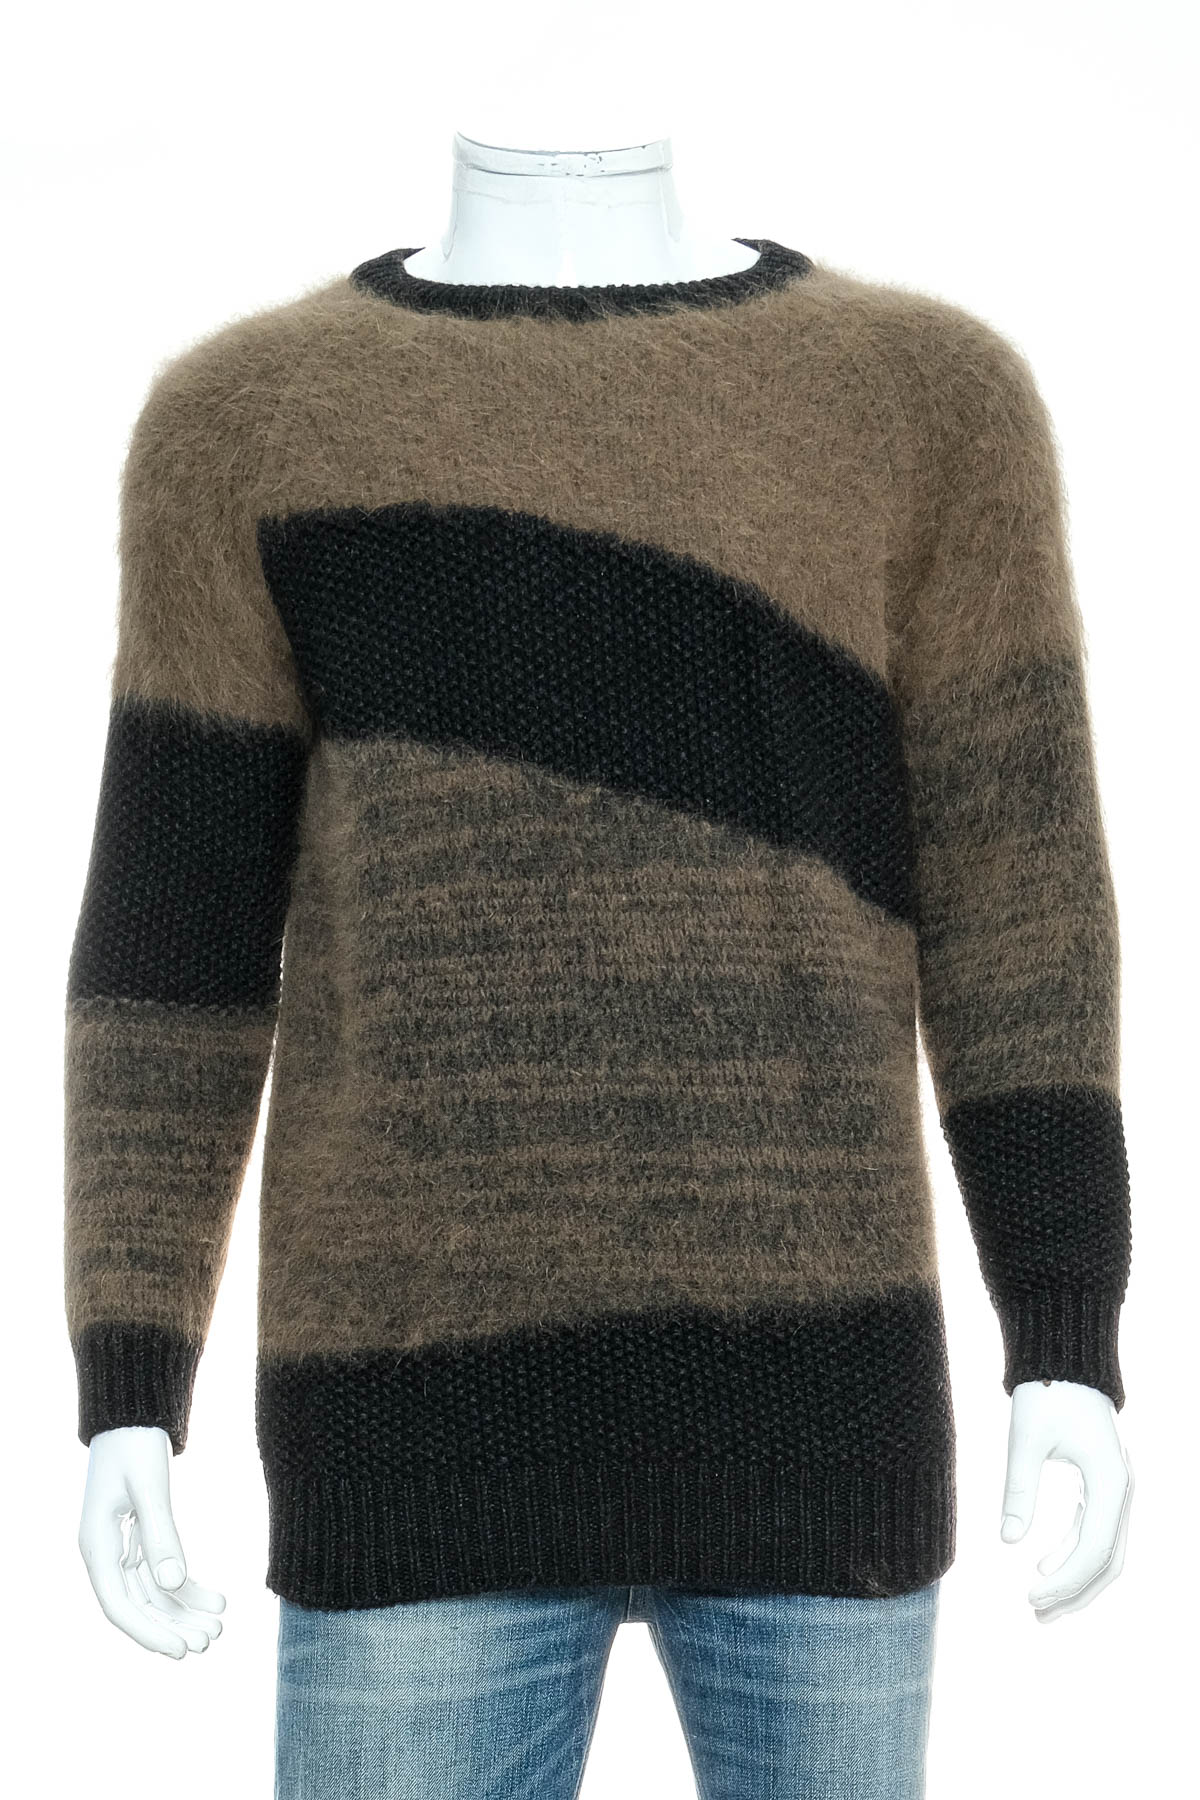 Men's sweater - CLOSED - 0